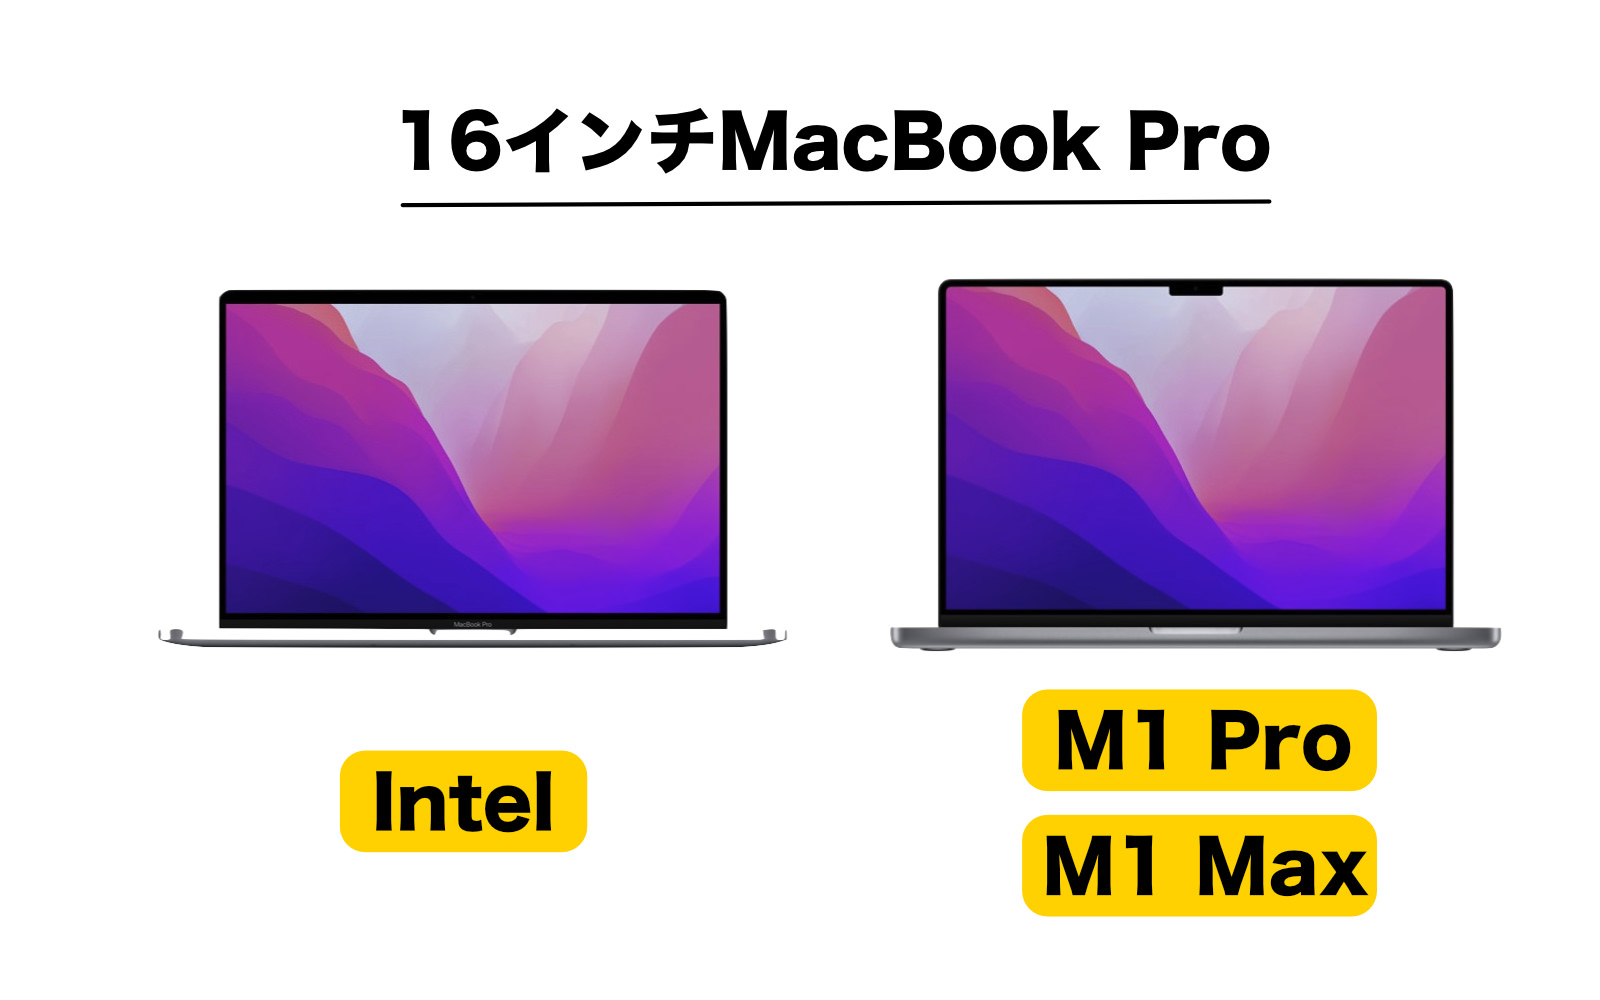 16inch macbookpro intel vs m1promax